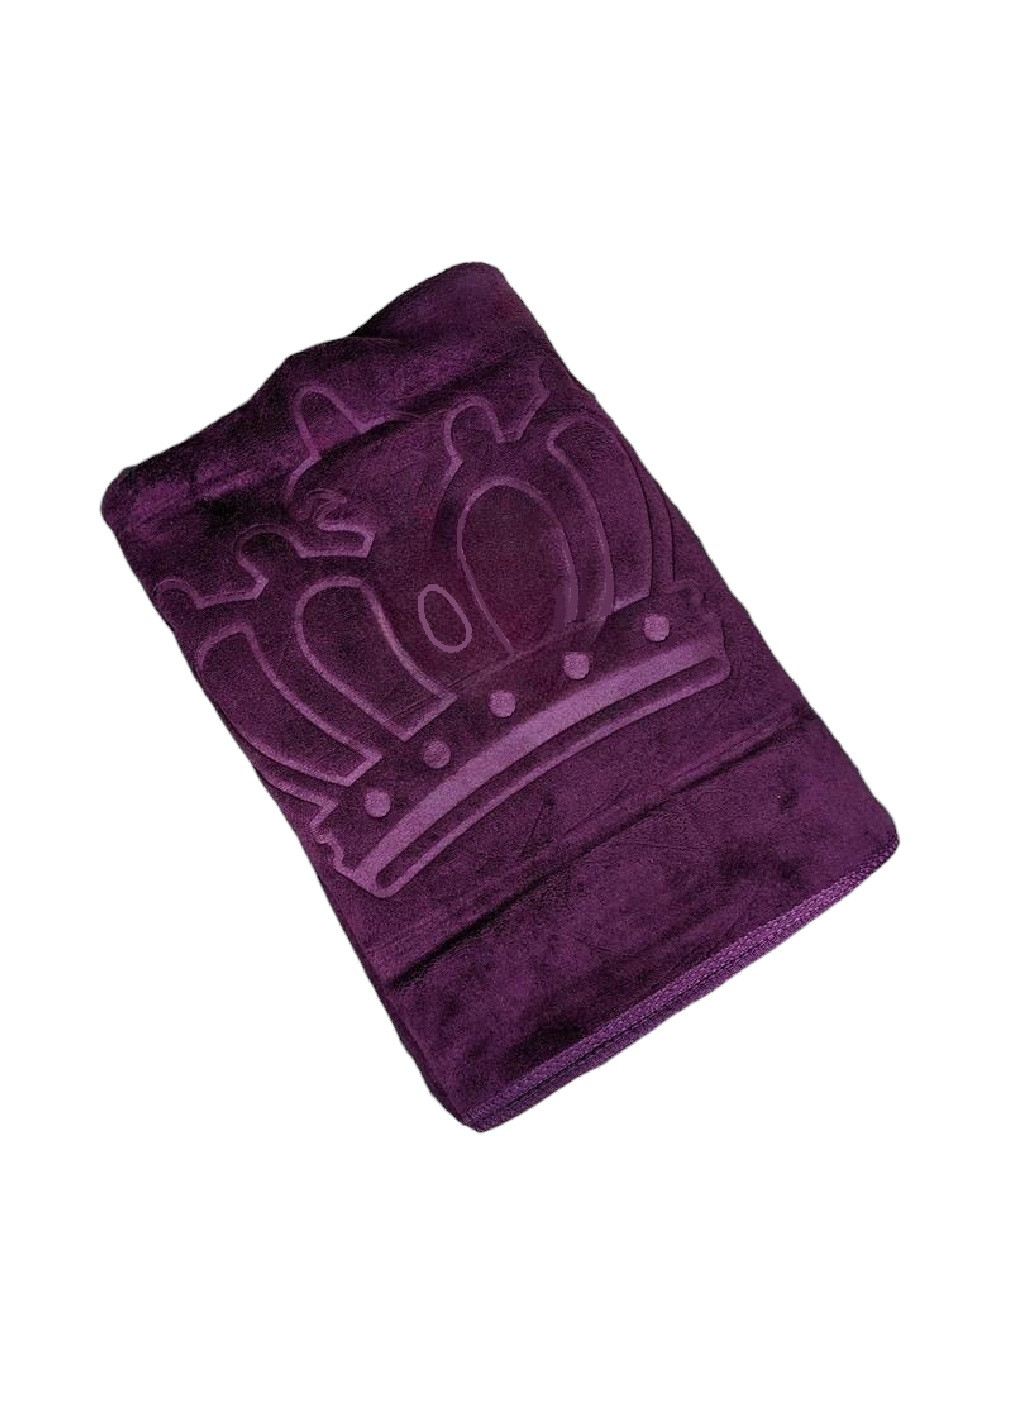 Unbranded полотенце микрофибра велюр для ванны бани сауны пляжа быстросохнущее с узором 170х90 см (476116-prob) корона фиолетовое однотонный фиолетовый производство -